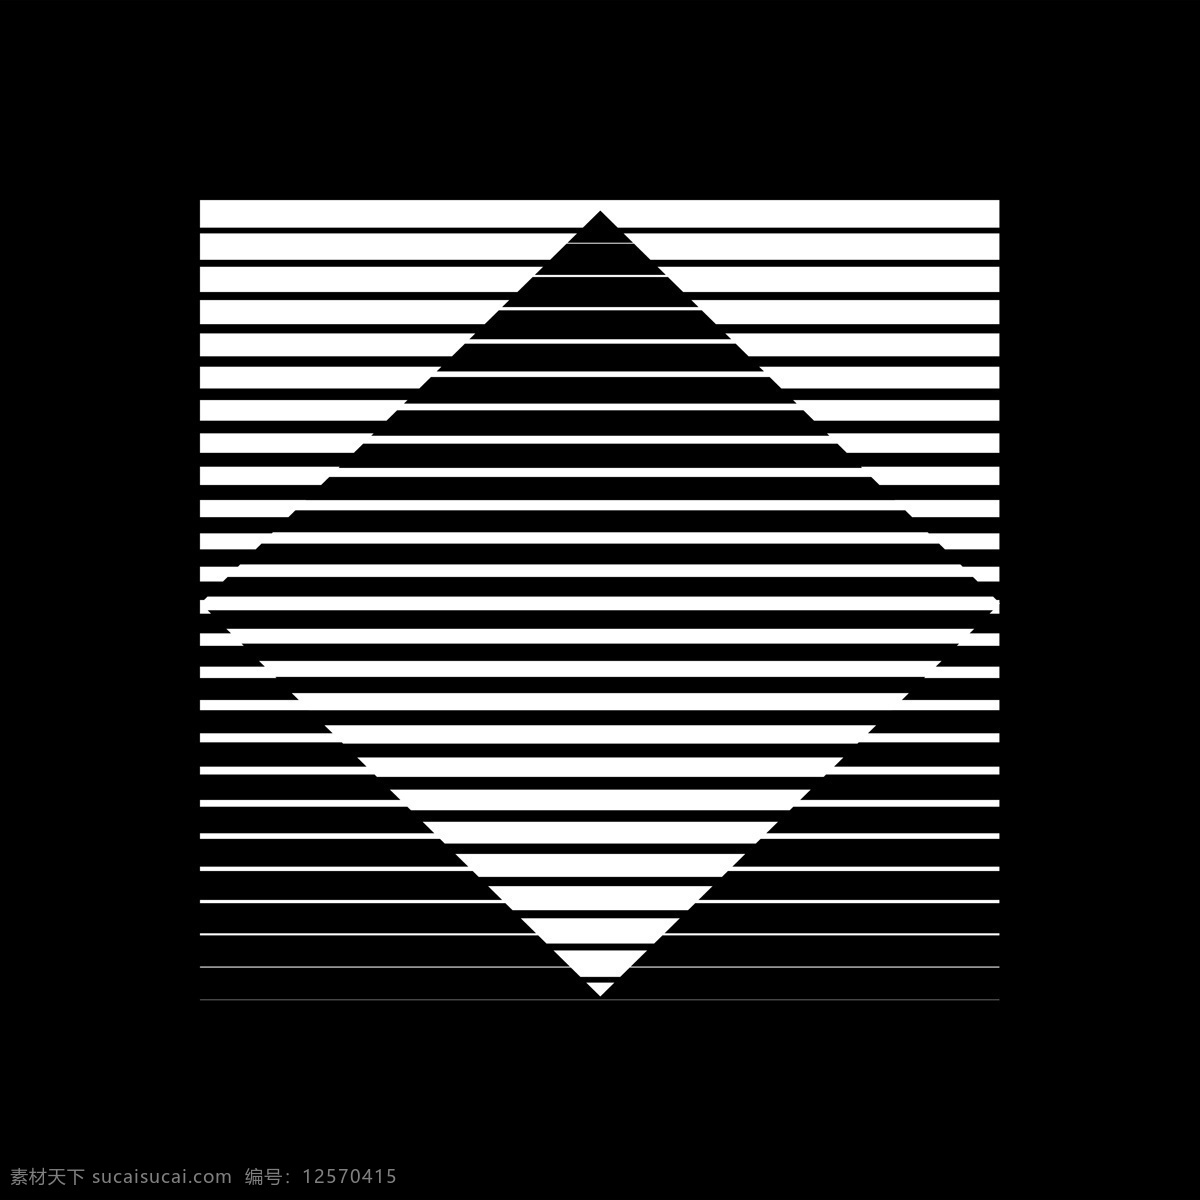 抽象 背景图片 潮流 几何 黑底 冲击 潮流抽象元素 底纹边框 抽象底纹 正方形 菱形